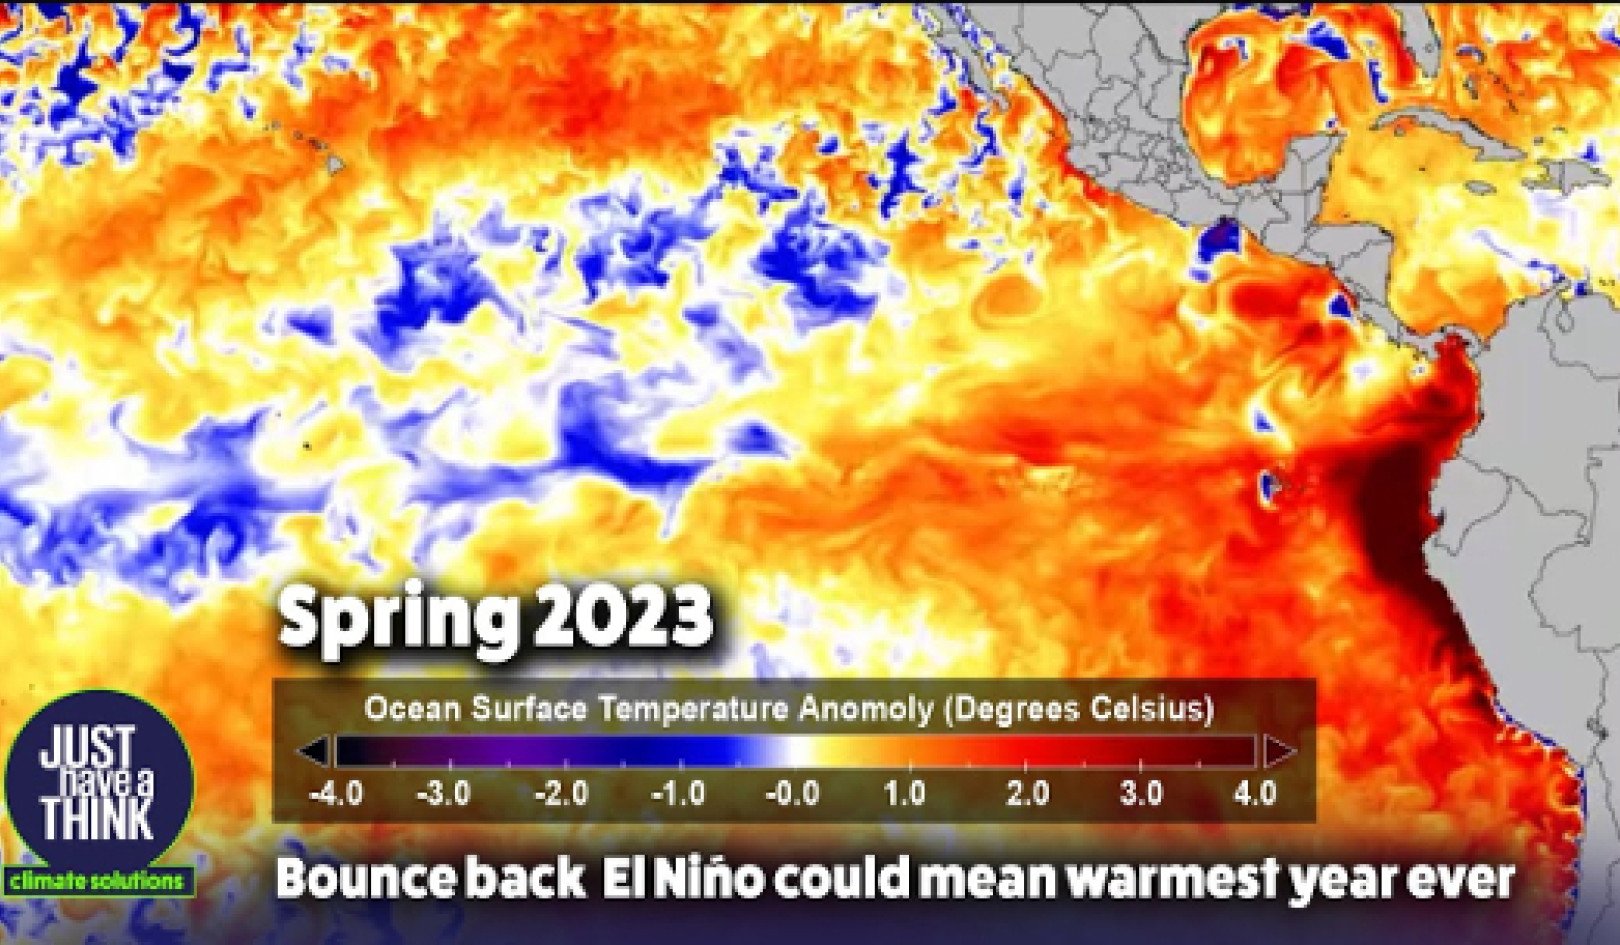 De onvoorspelbare aard van El Niño: inzicht in de impact ervan op wereldwijde weerpatronen